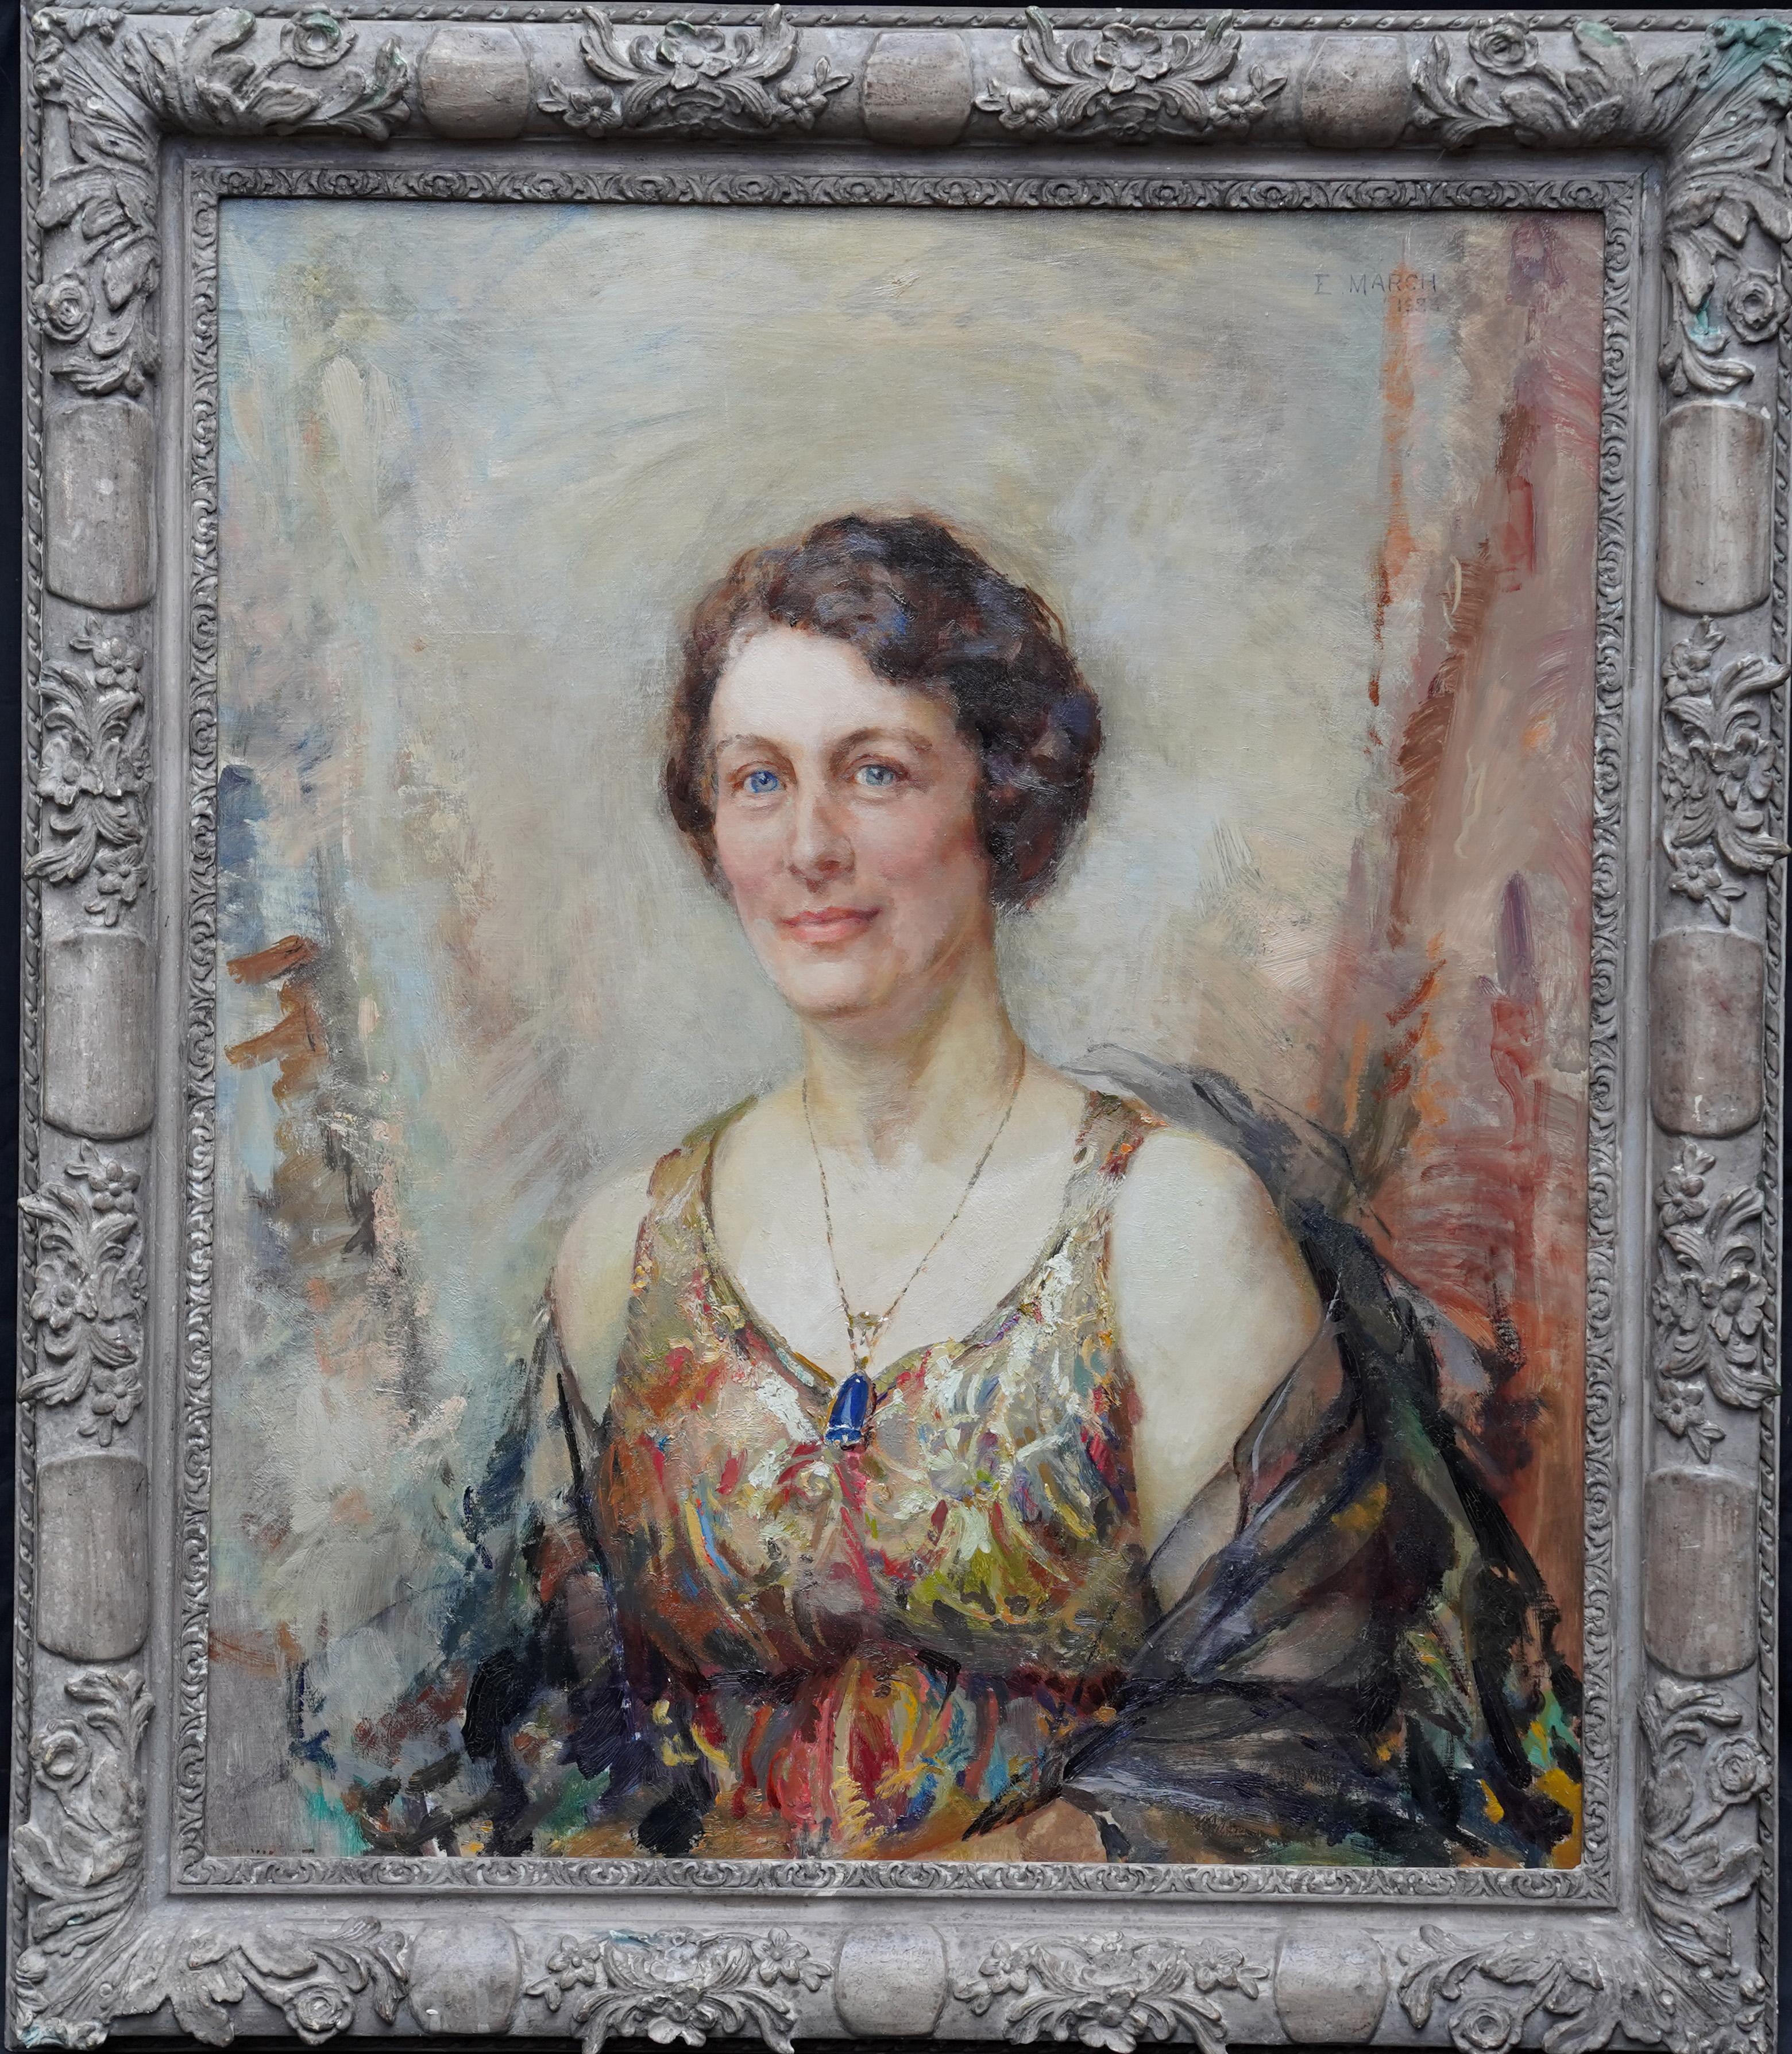 Elsie March Portrait Painting - Portrait of a Lady with Pendant - British Art Deco 30's portrait oil painting